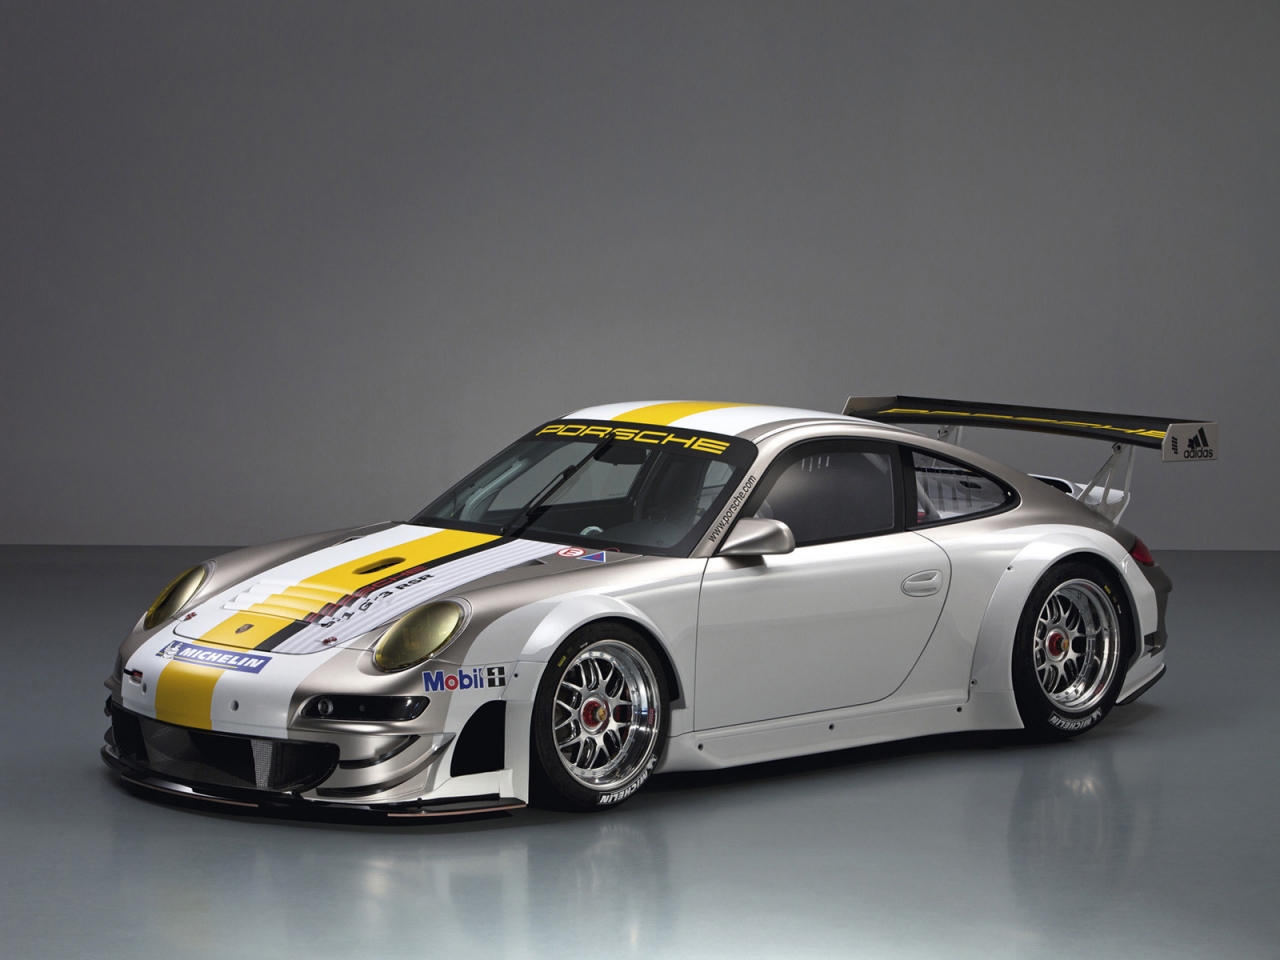 Porsche 911 GT3 RSR Studio for 1280 x 960 resolution